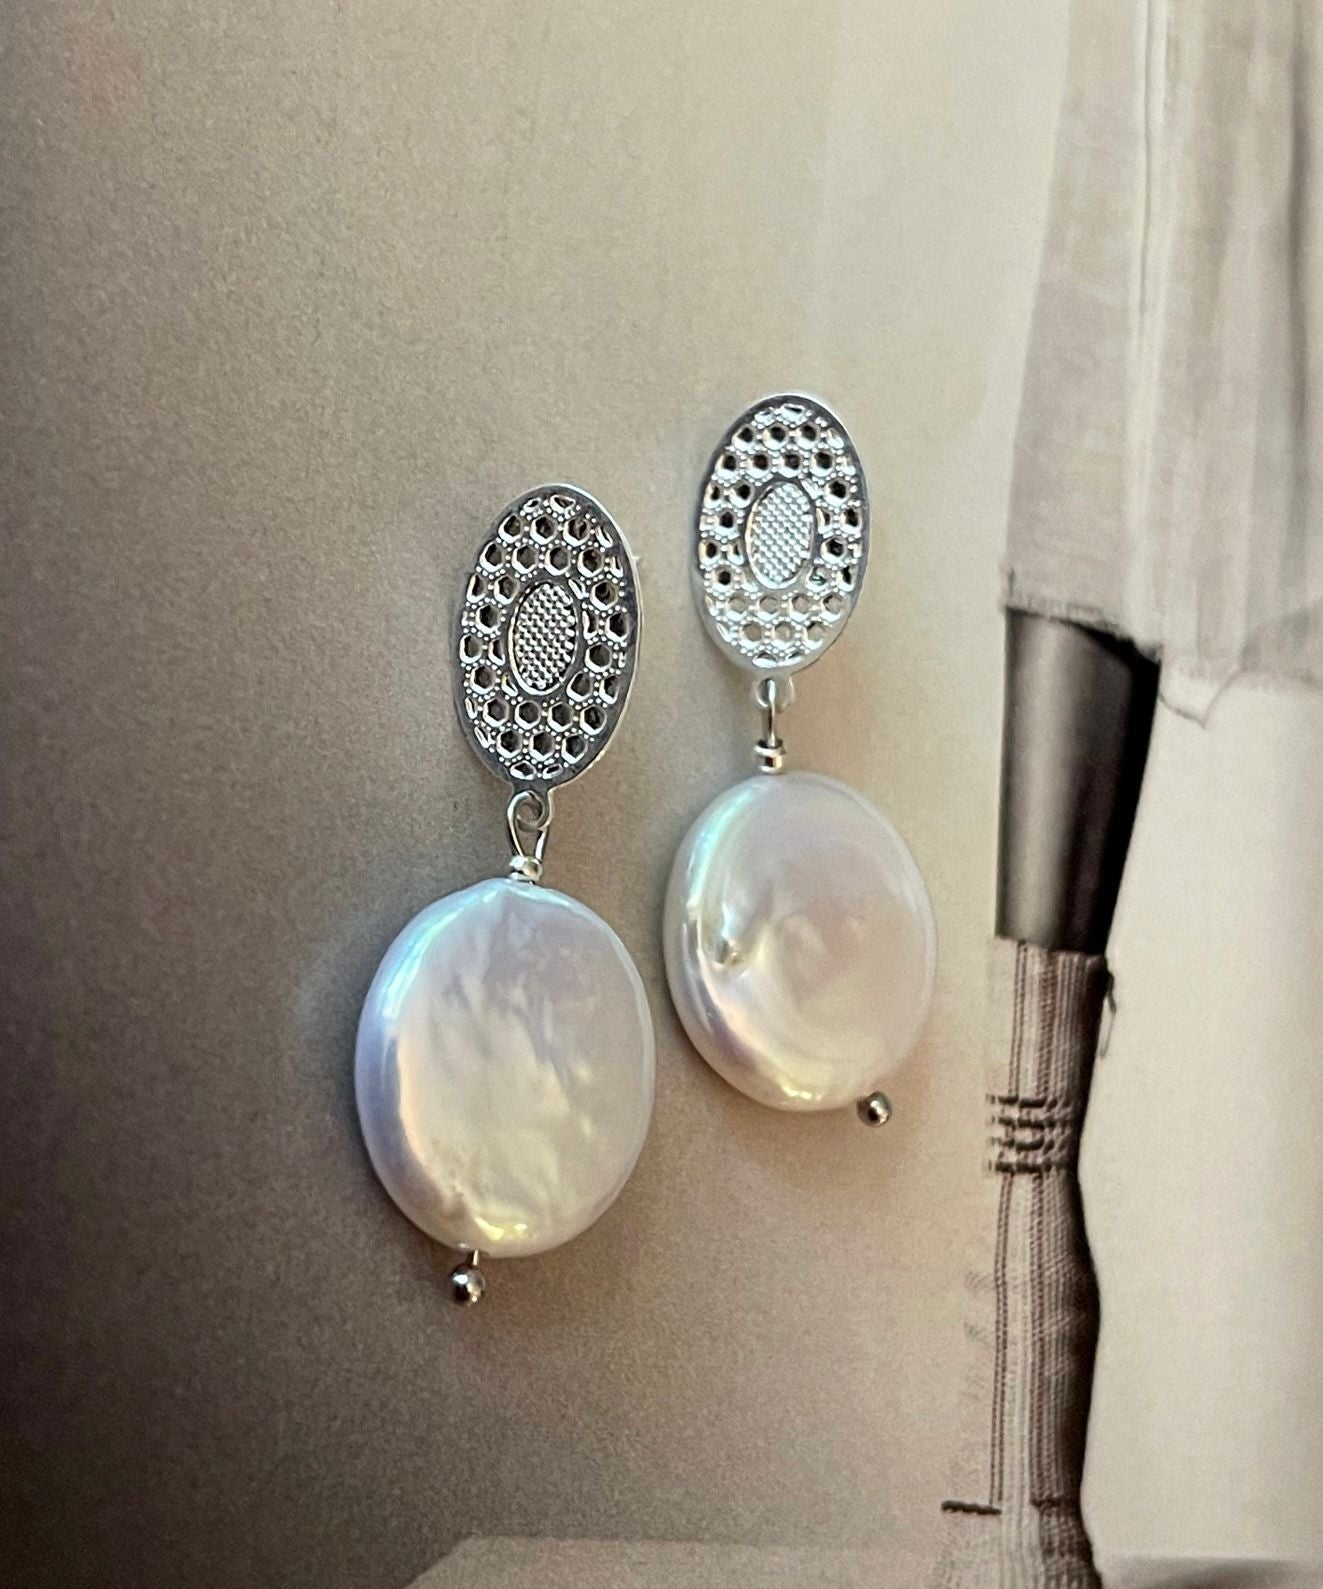 Aros Hippie Chic bañados en plata, base con diseño y perla natural blanca